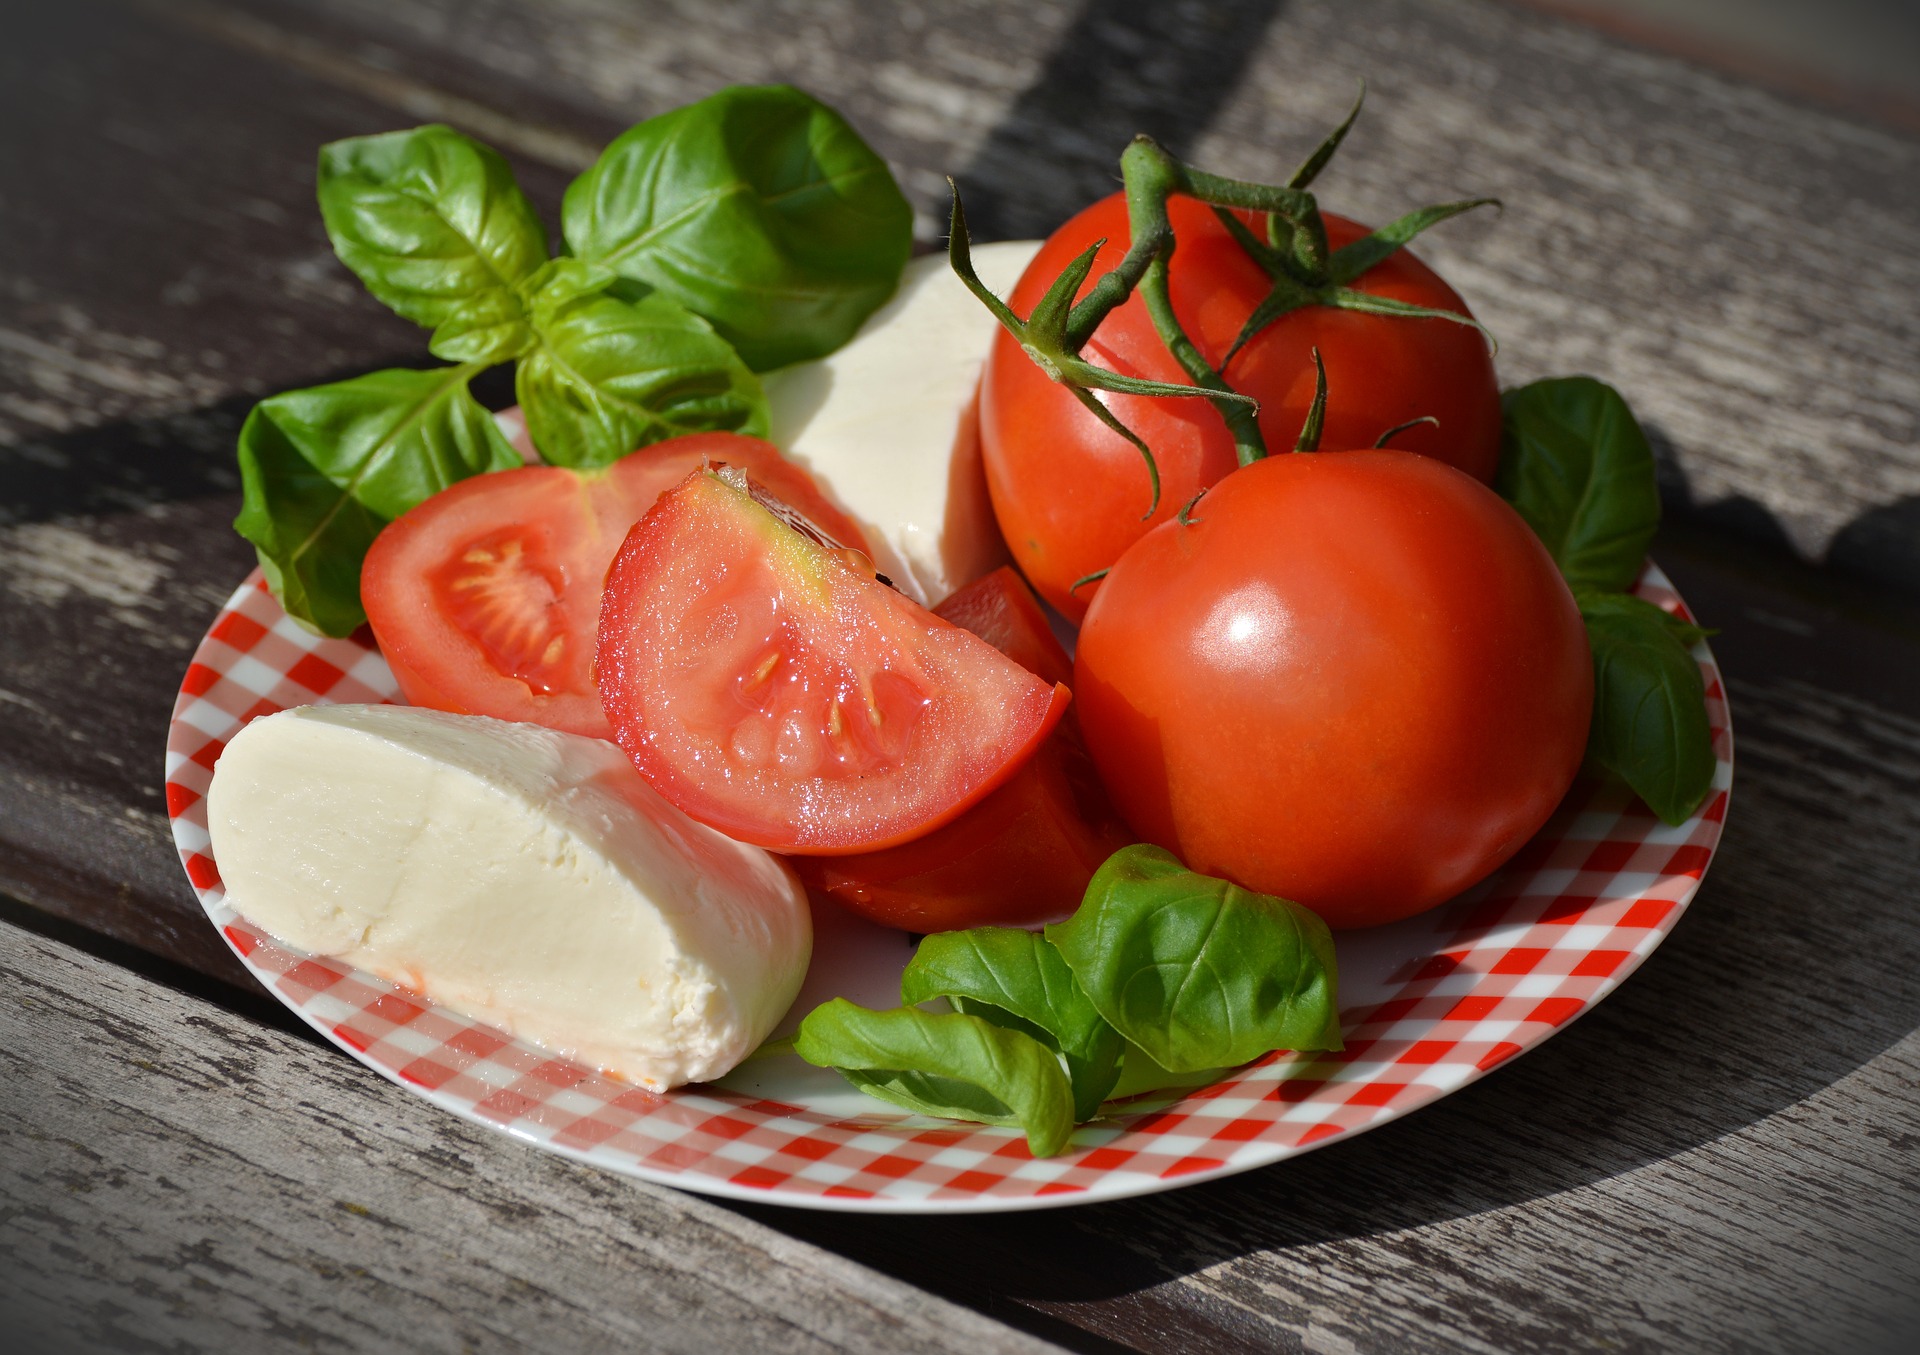 Pomodori, mozzarella e basilico: tre ingredienti molto rappresentativi della cucina italiana